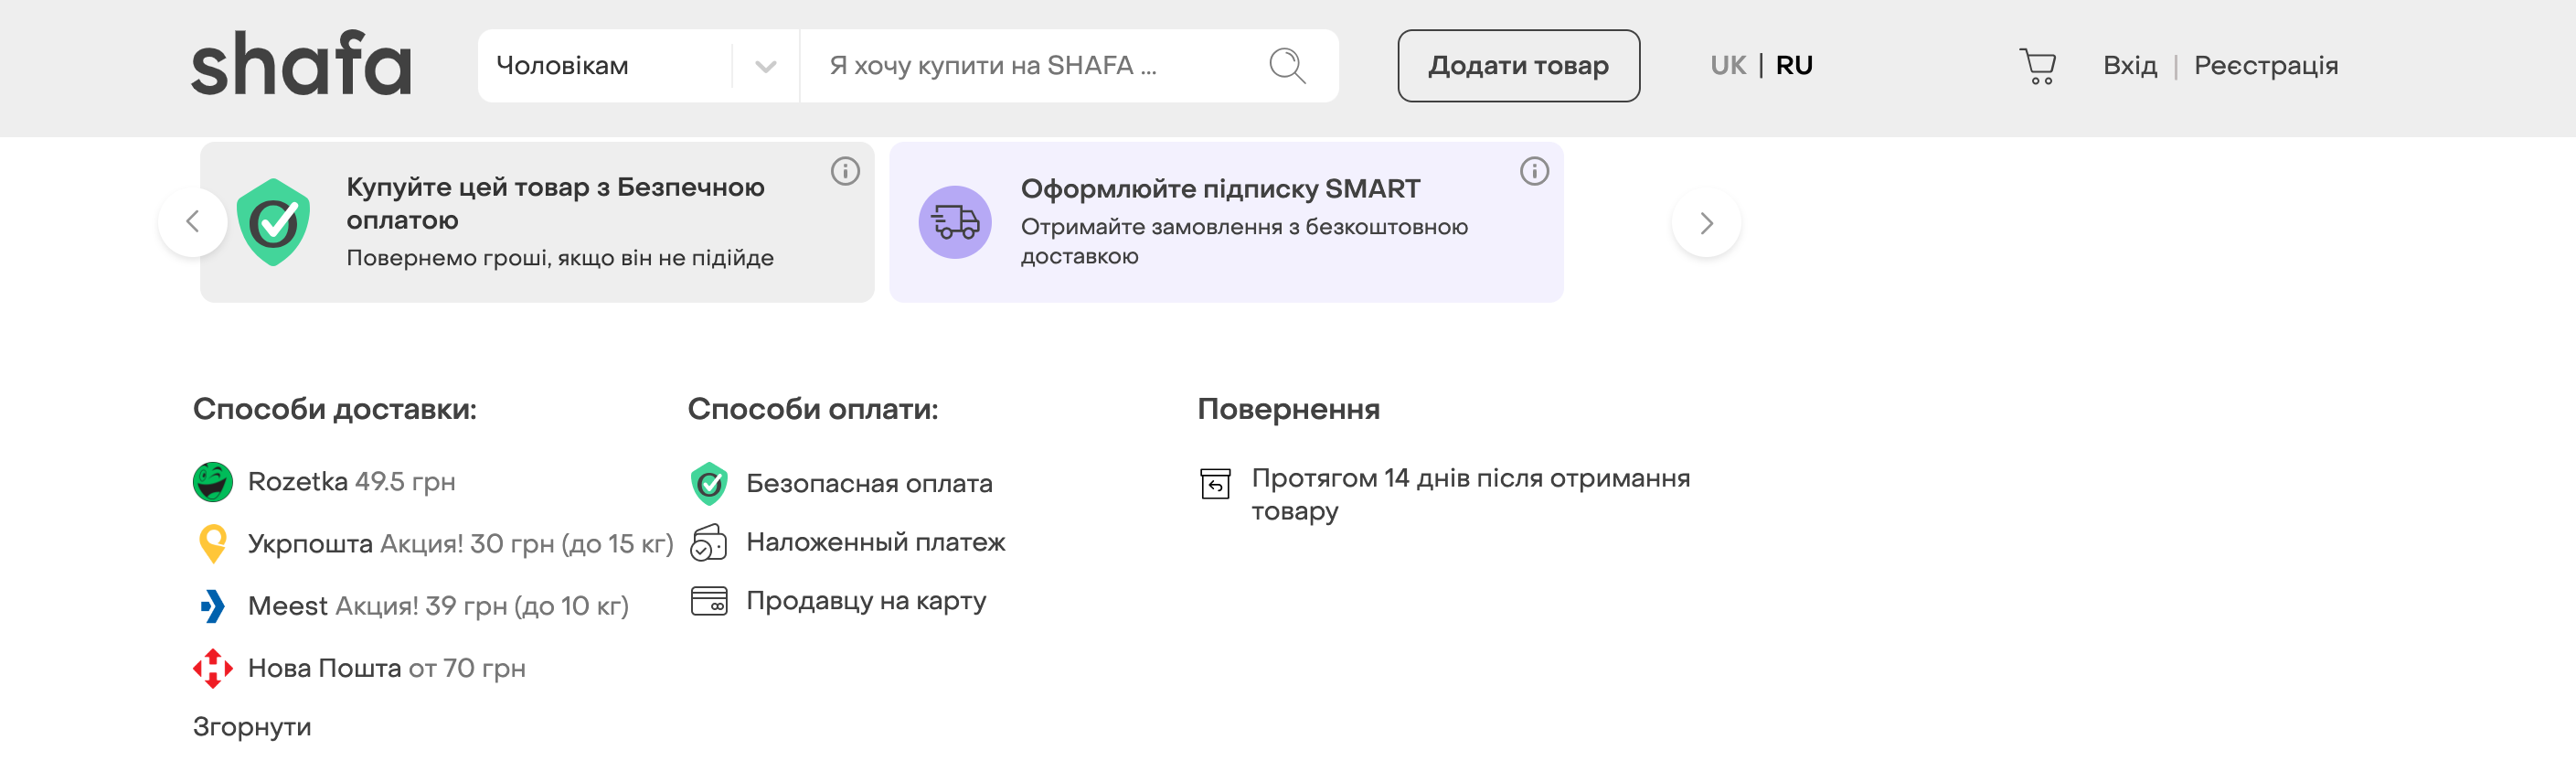 Стоимость доставки Rozetka из магазина Shafa (Скриншот LIGA.net)